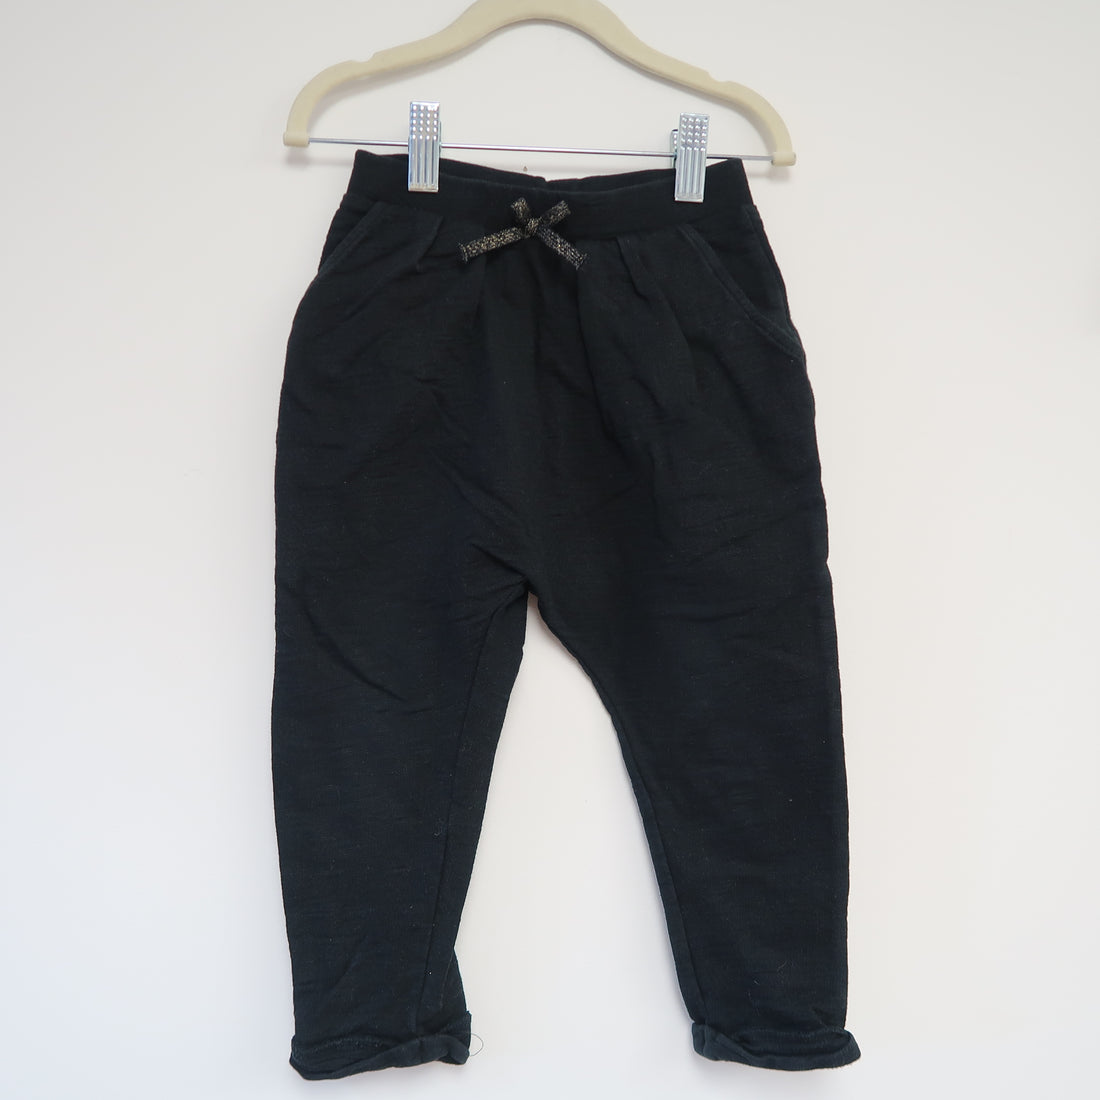 Next - Pants (1.5-2T) *fit big